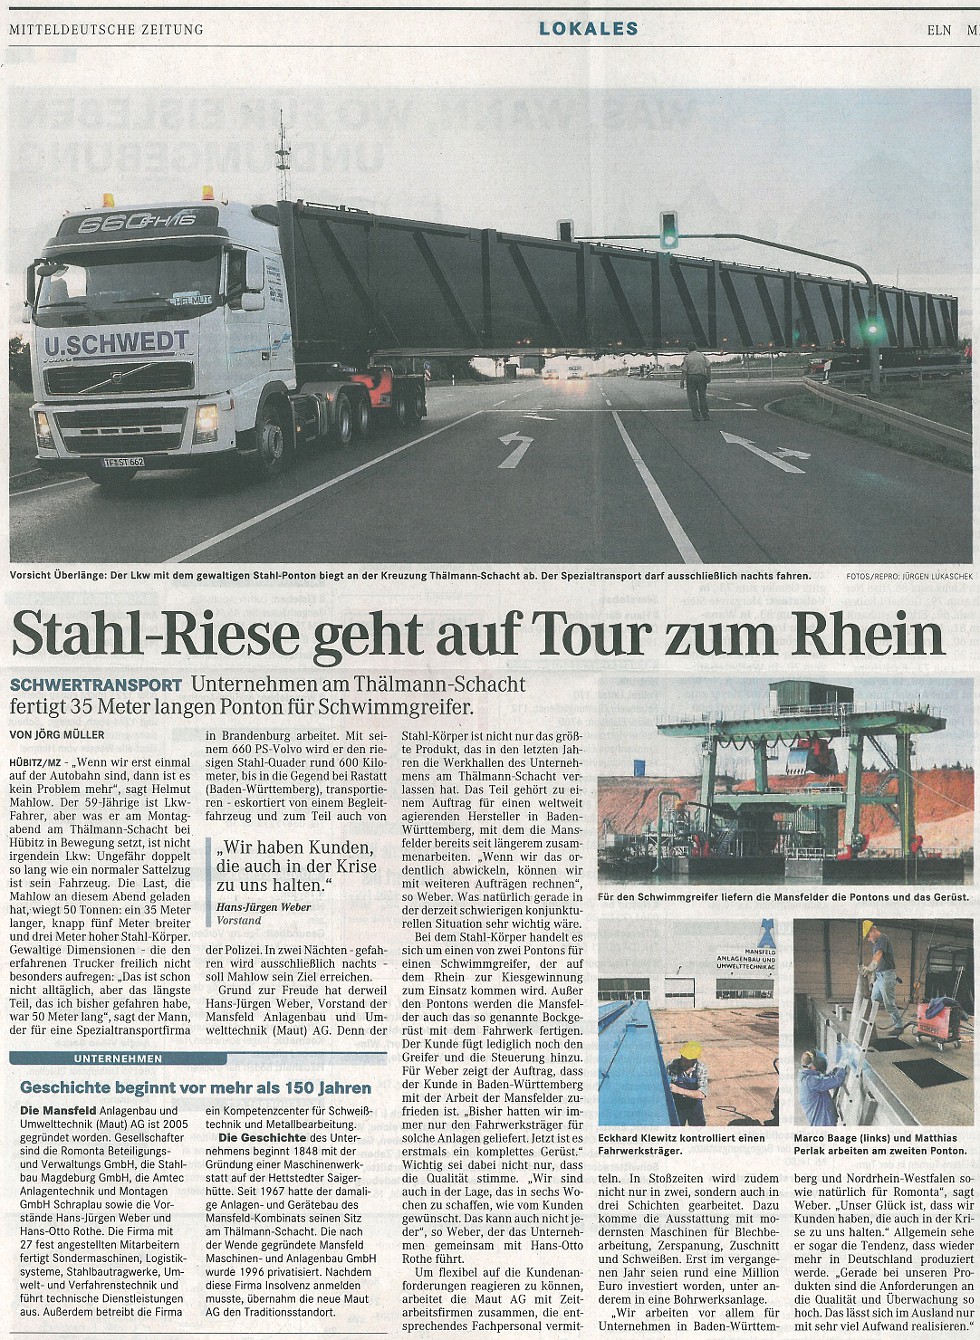 Stahlriese geht auf Tour zum Rhein